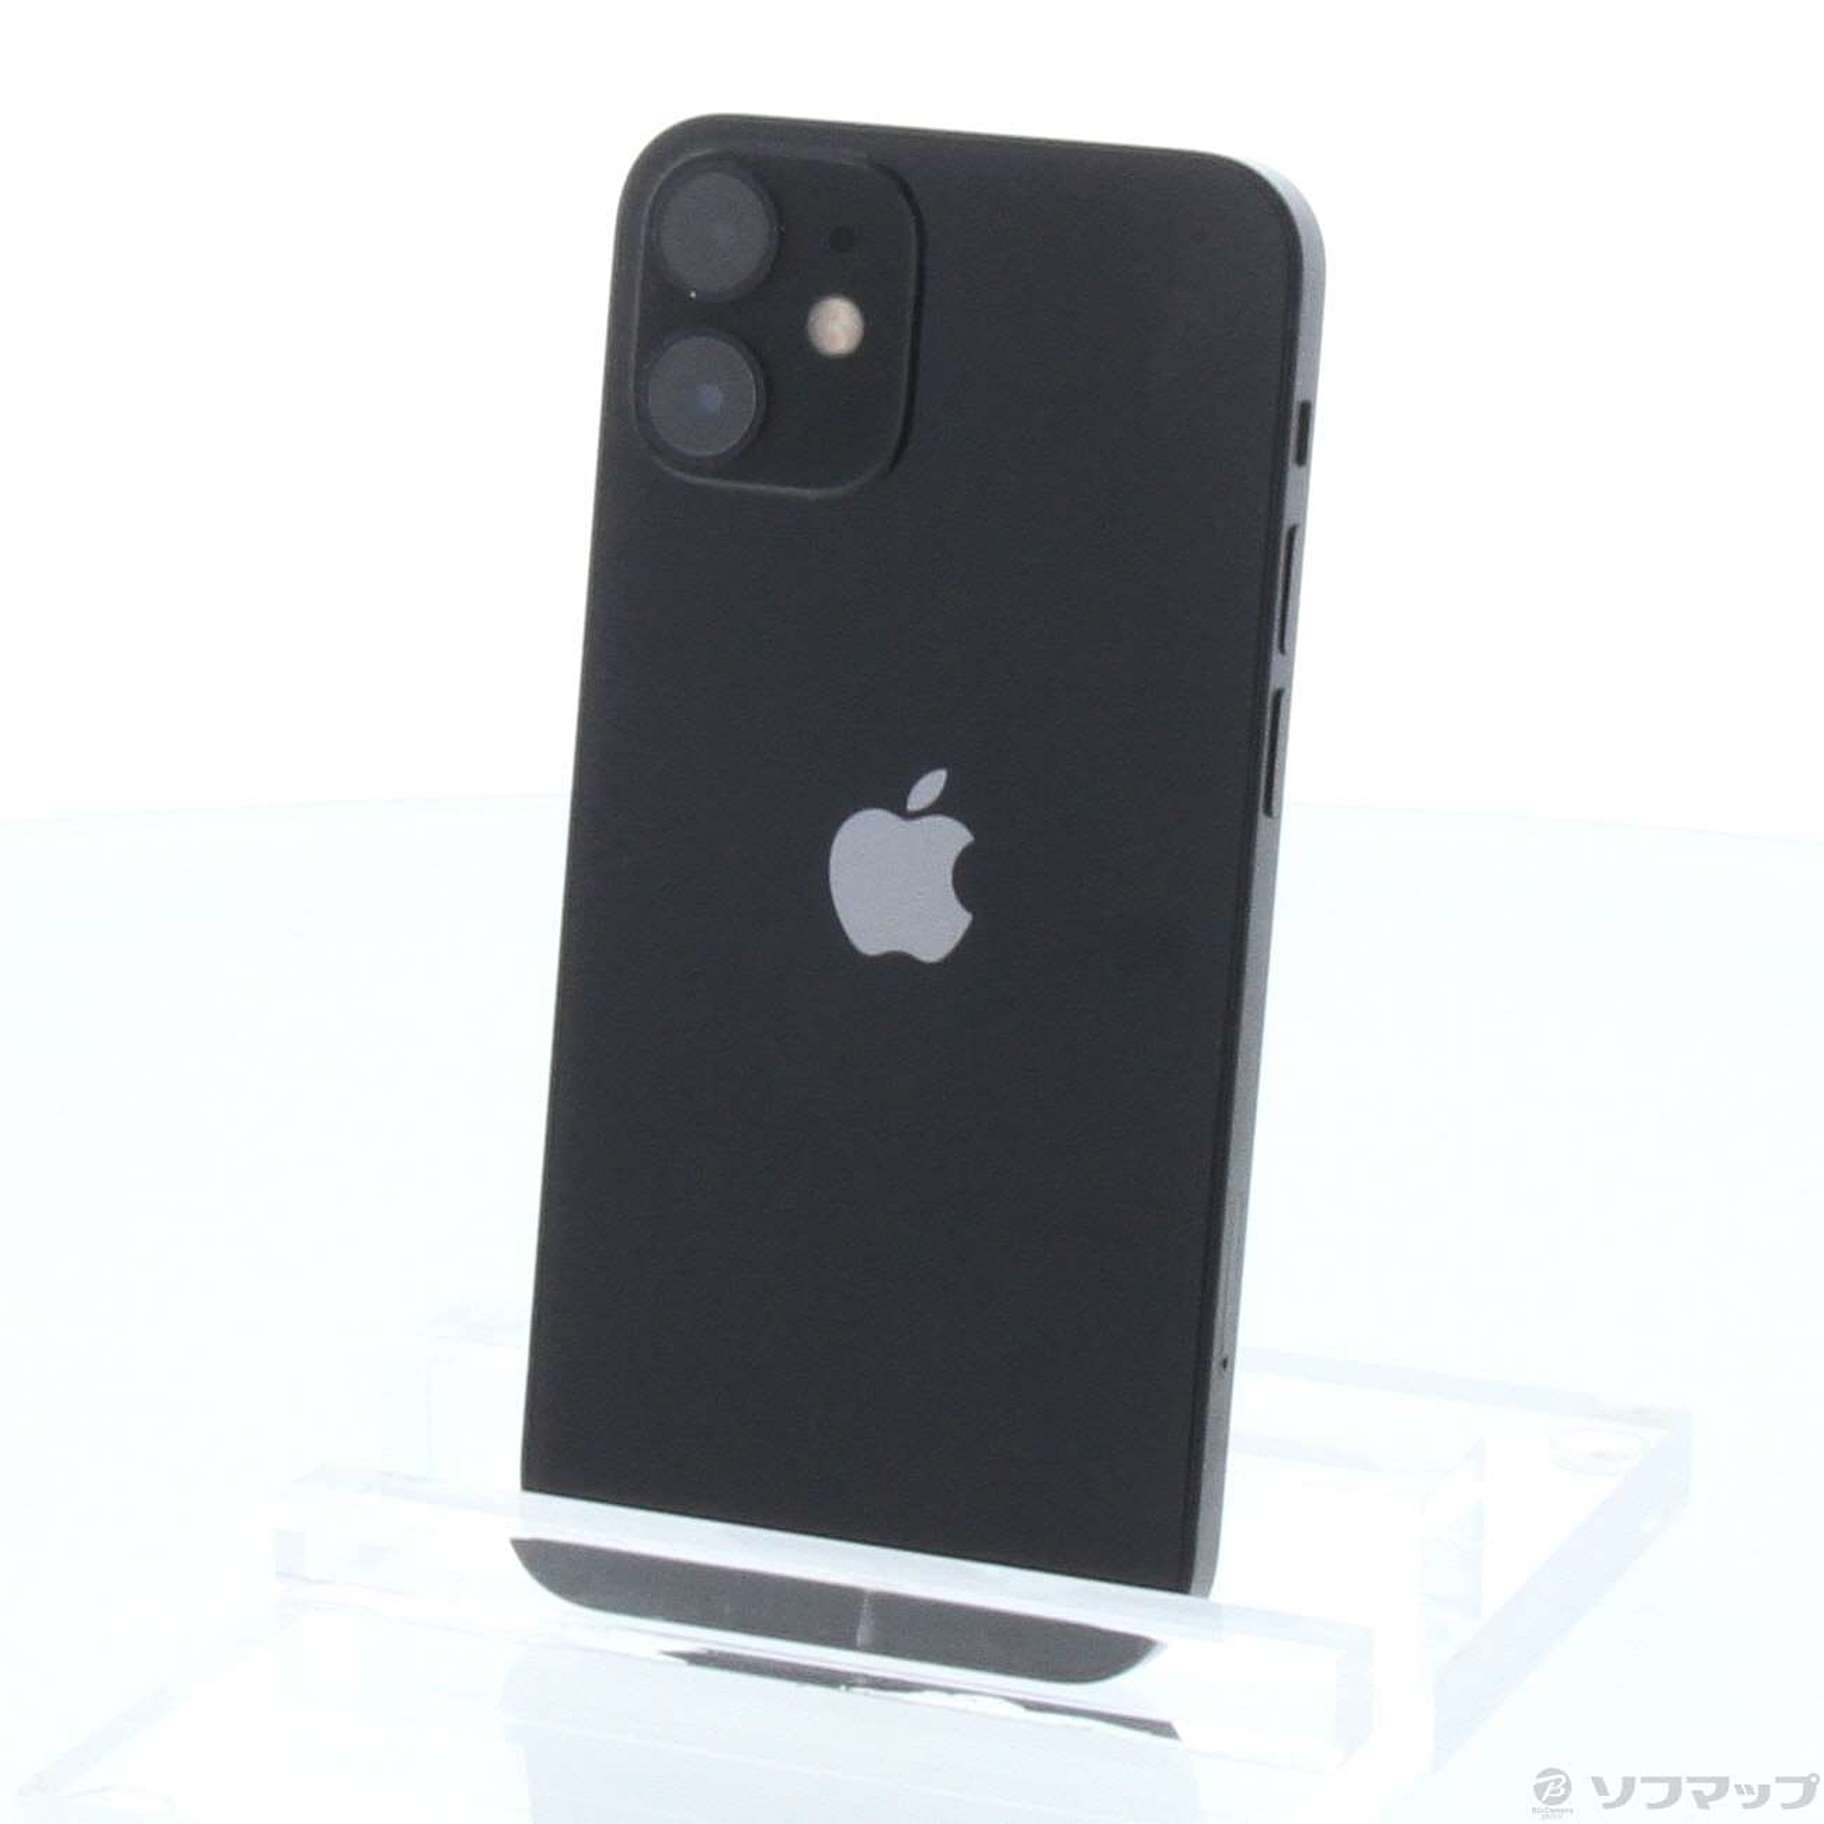 iPhone12 mini 256GB ブラック